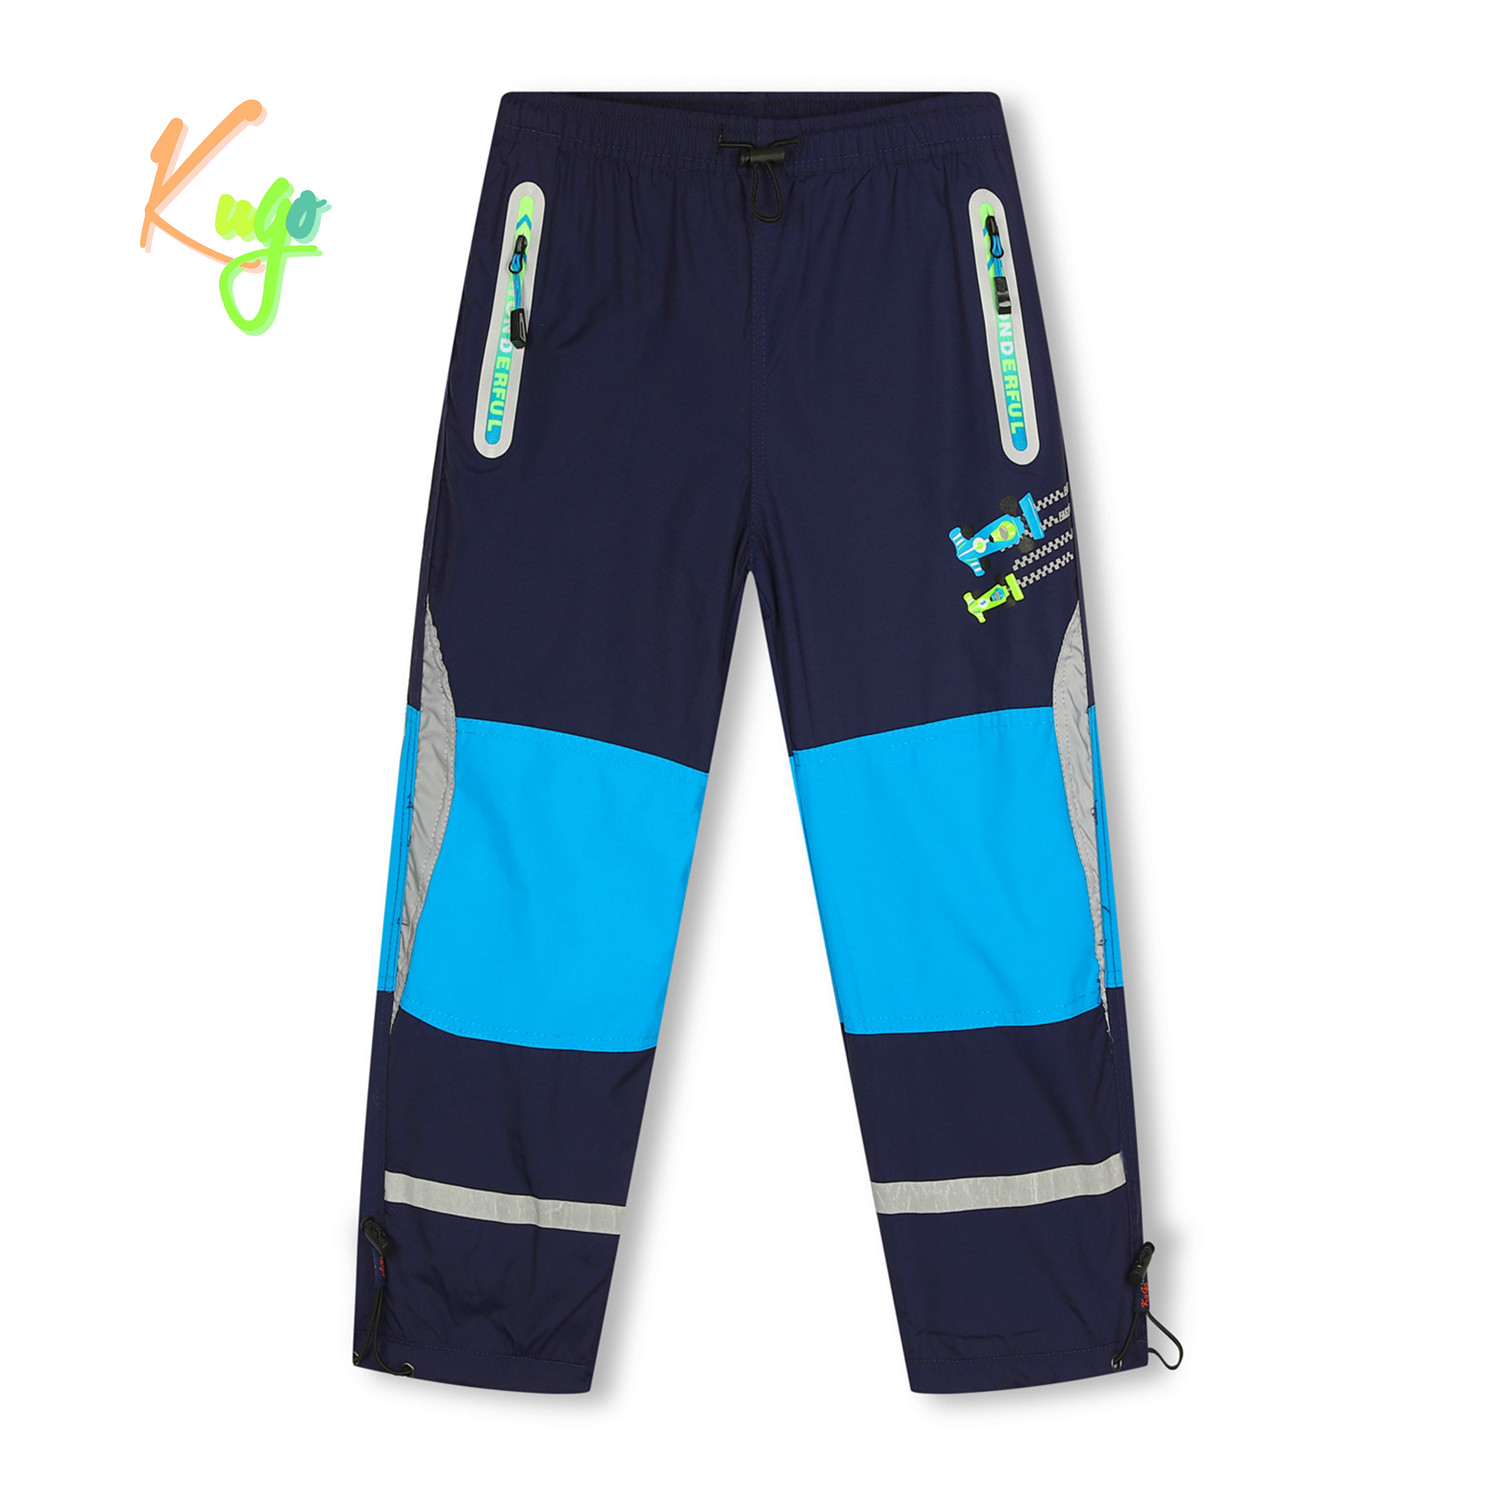 Chlapecké šusťákové kalhoty, zateplené - KUGO DK7127, tmavě modrá Barva: Modrá tmavě, Velikost: 116